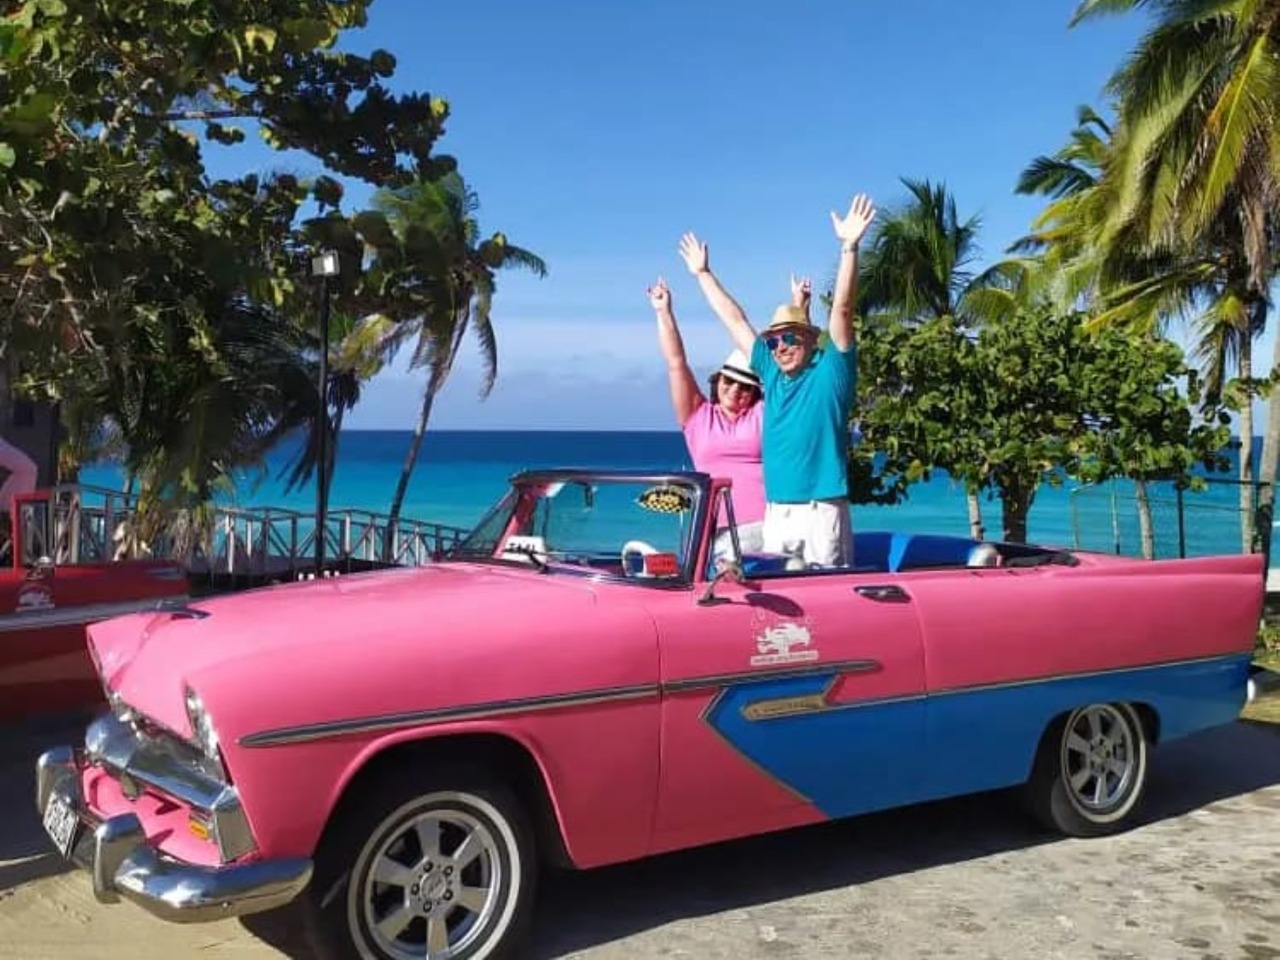 По Гаване на розовом кабриолете | Цена 375€, отзывы, описание экскурсии